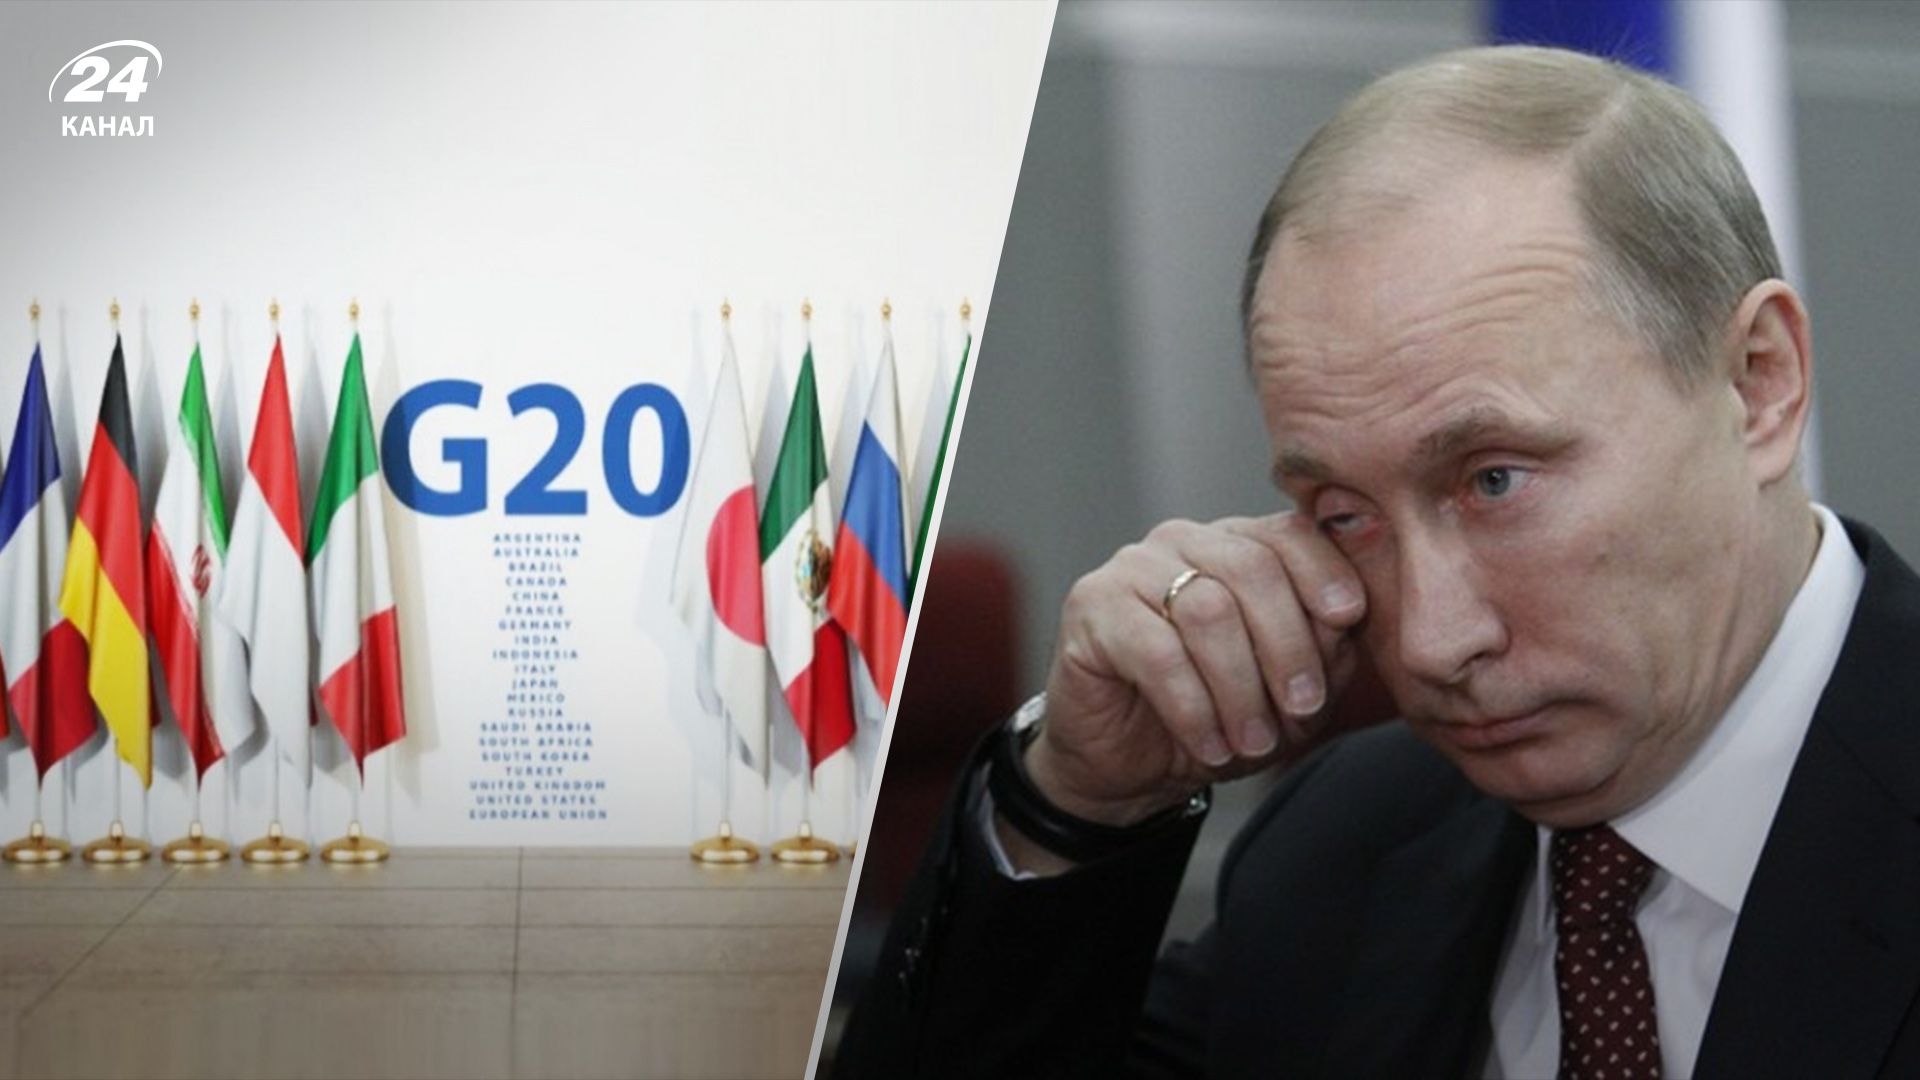 Решительно осуждаем российскую агрессию, – лидеры G20 обнародовали декларацию о войне в Украине - 24 Канал